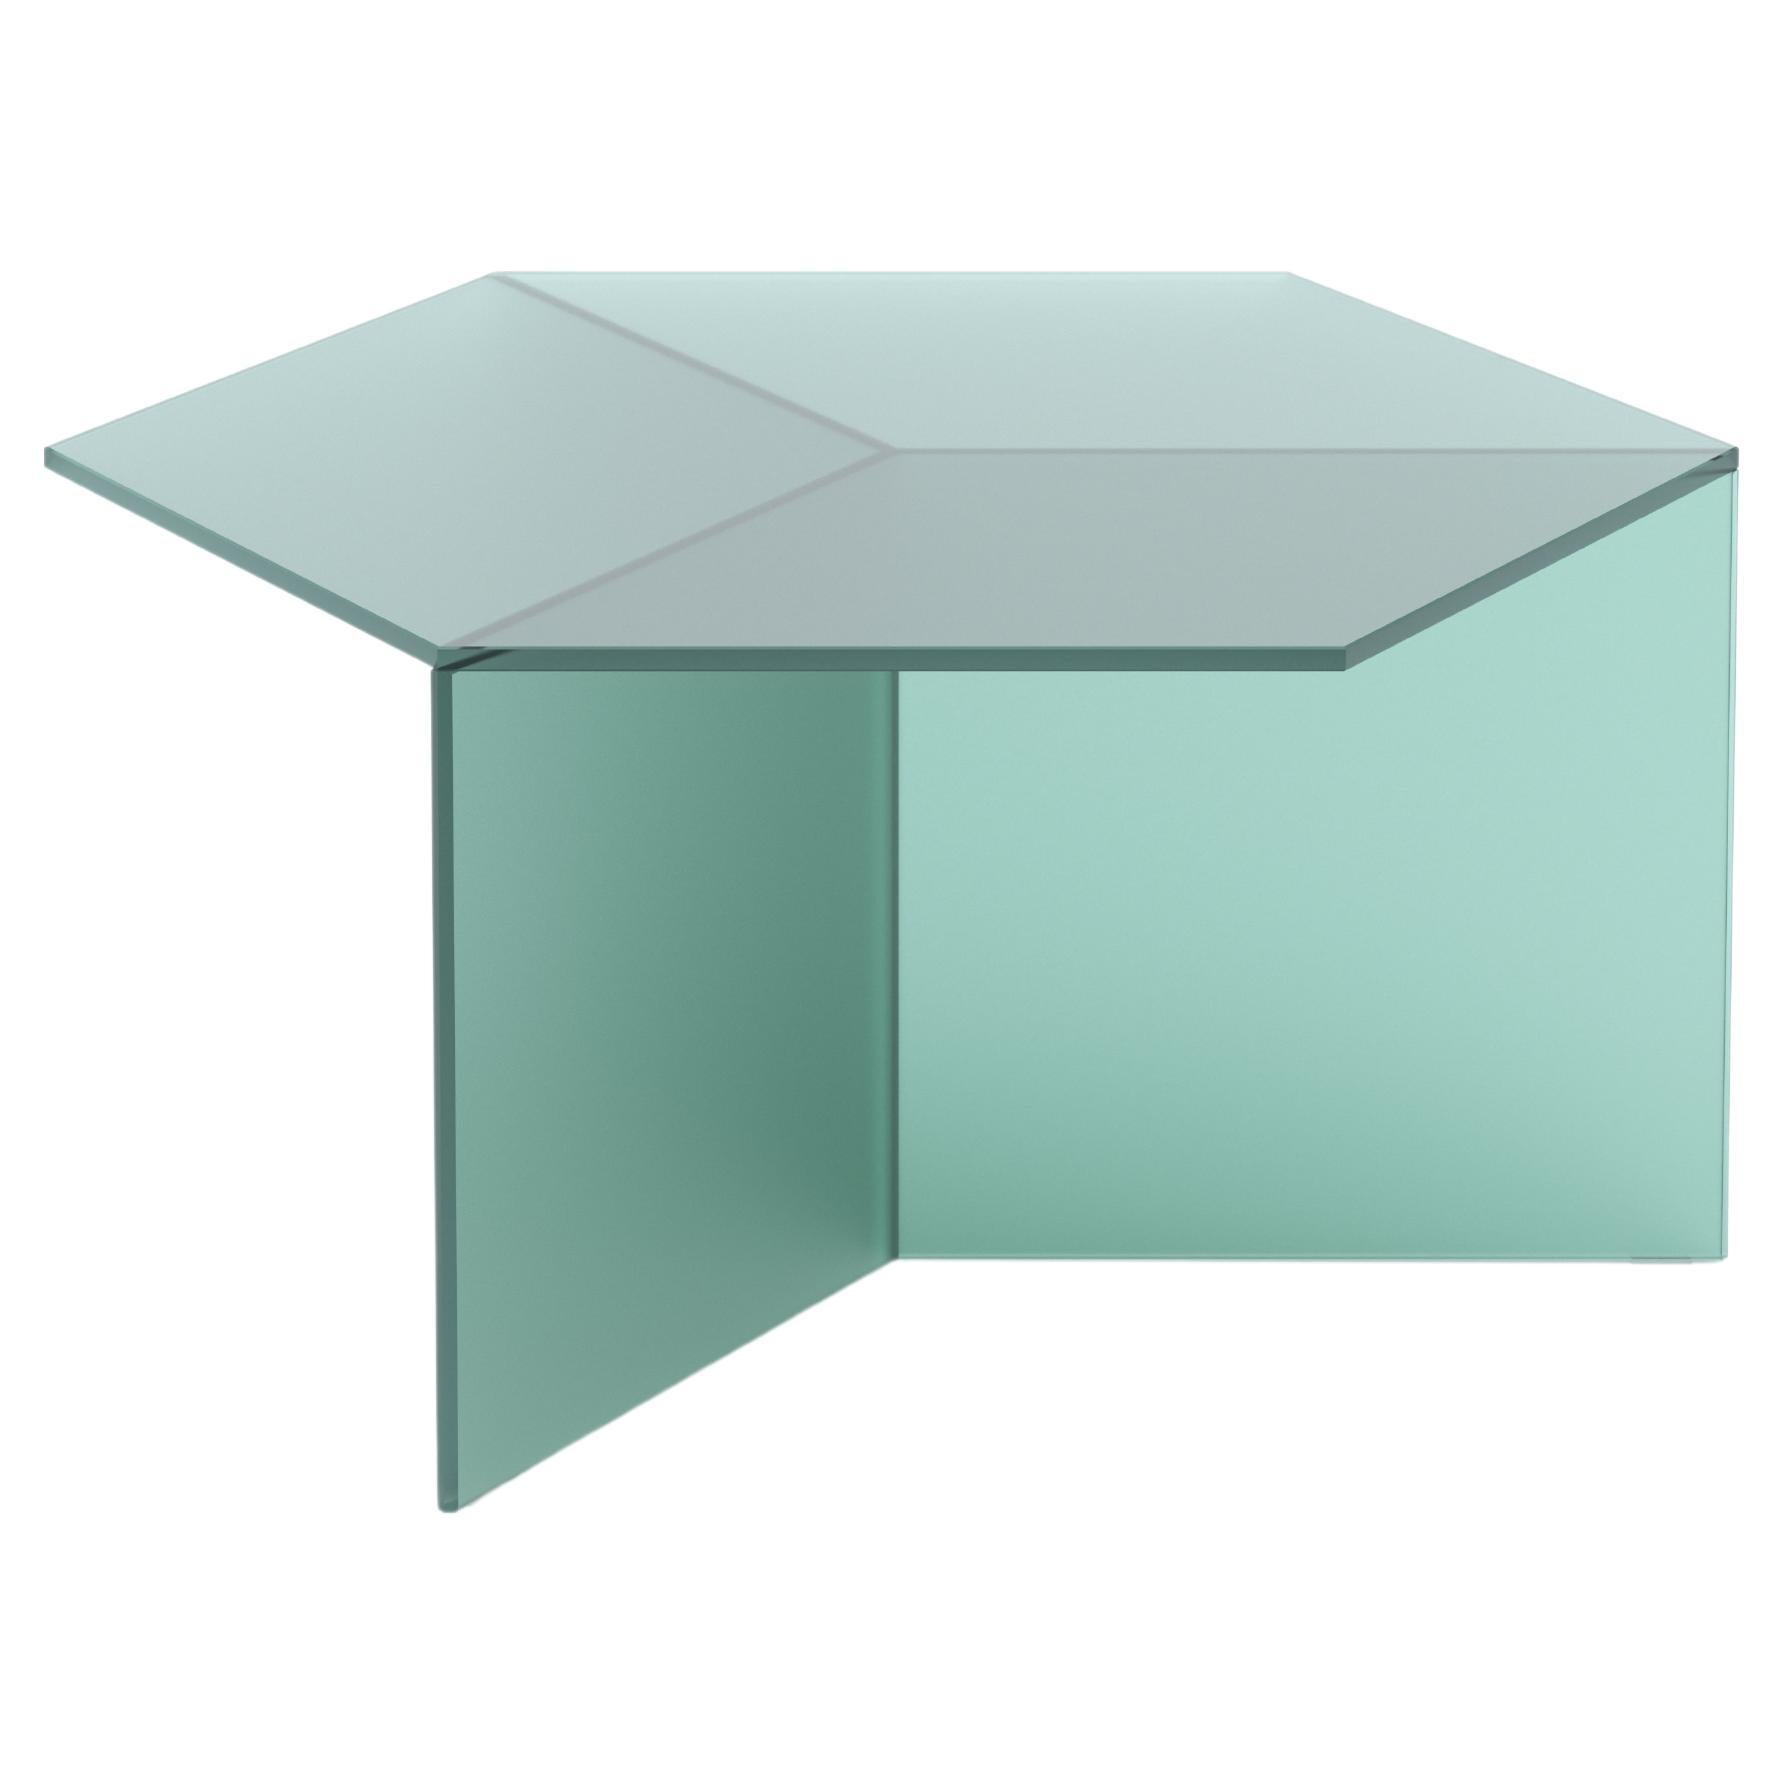 Table basse Isom Square 70 cm Satin Glass Green, Sebastian Scherer Neo/Craft